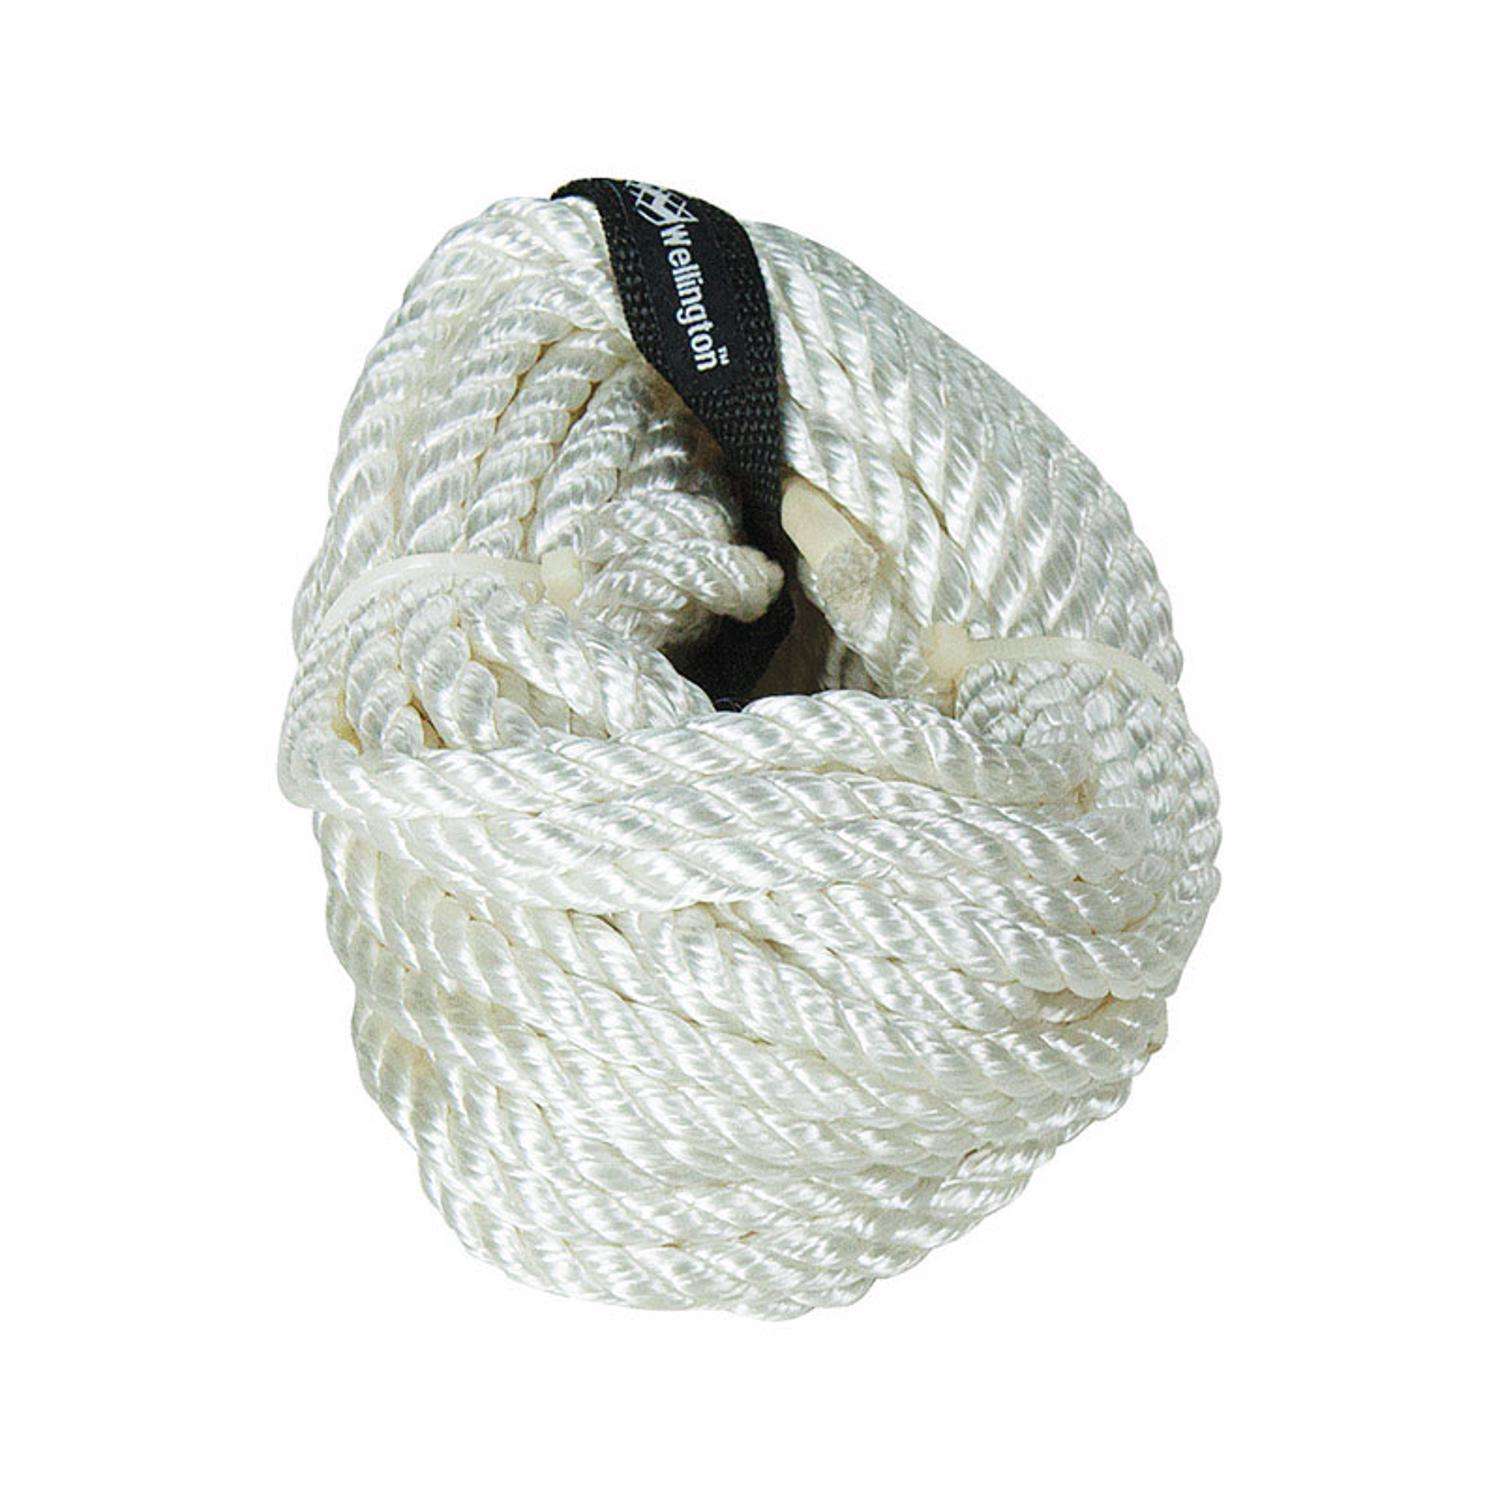 Twisted Nylon Rope - 3/8, White